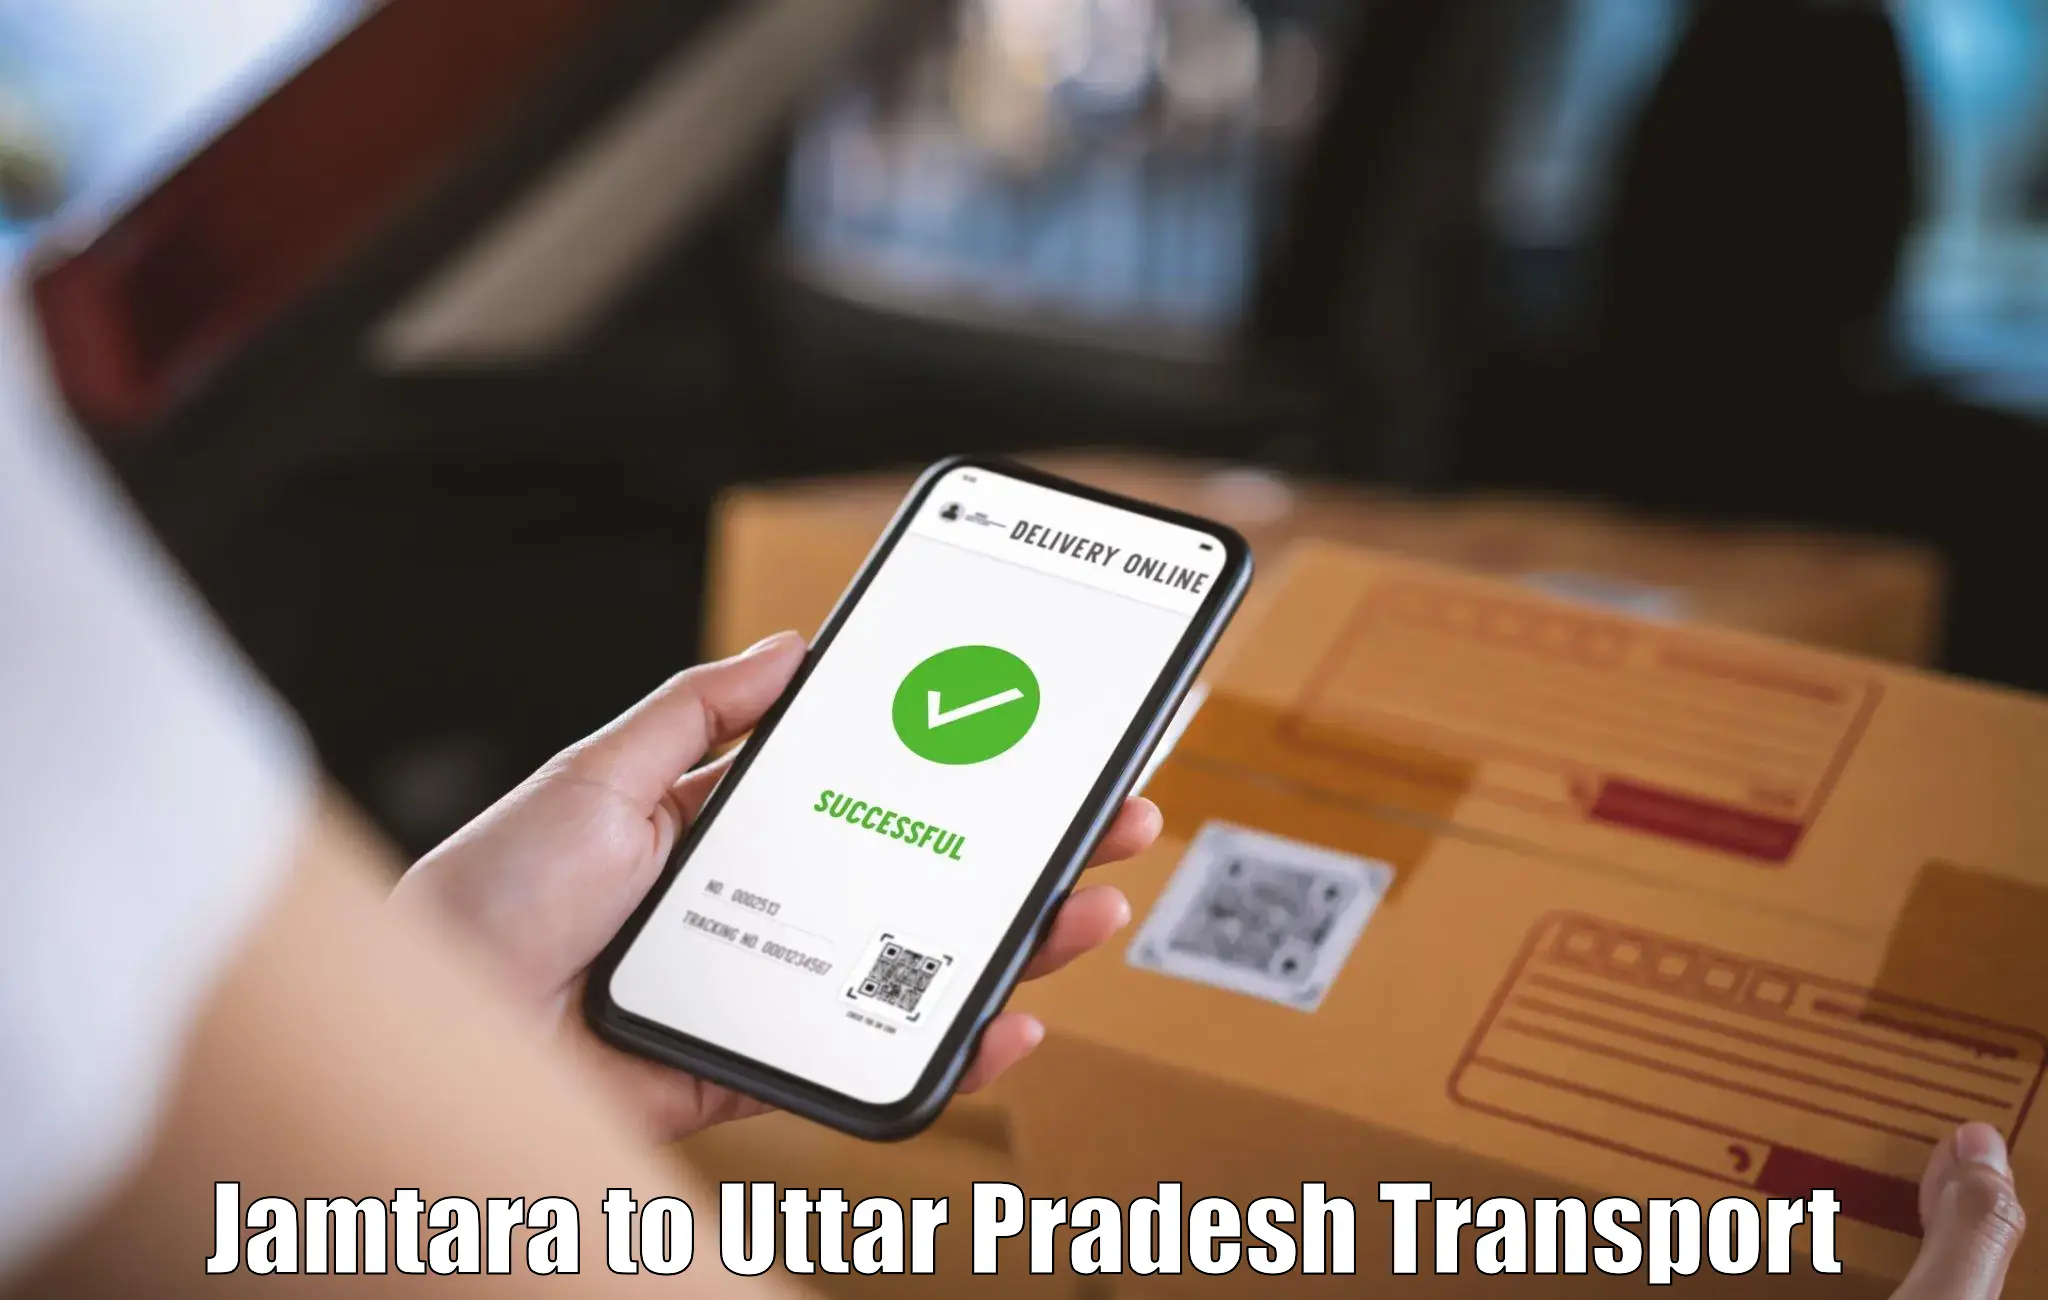 Commercial transport service in Jamtara to Uttar Pradesh